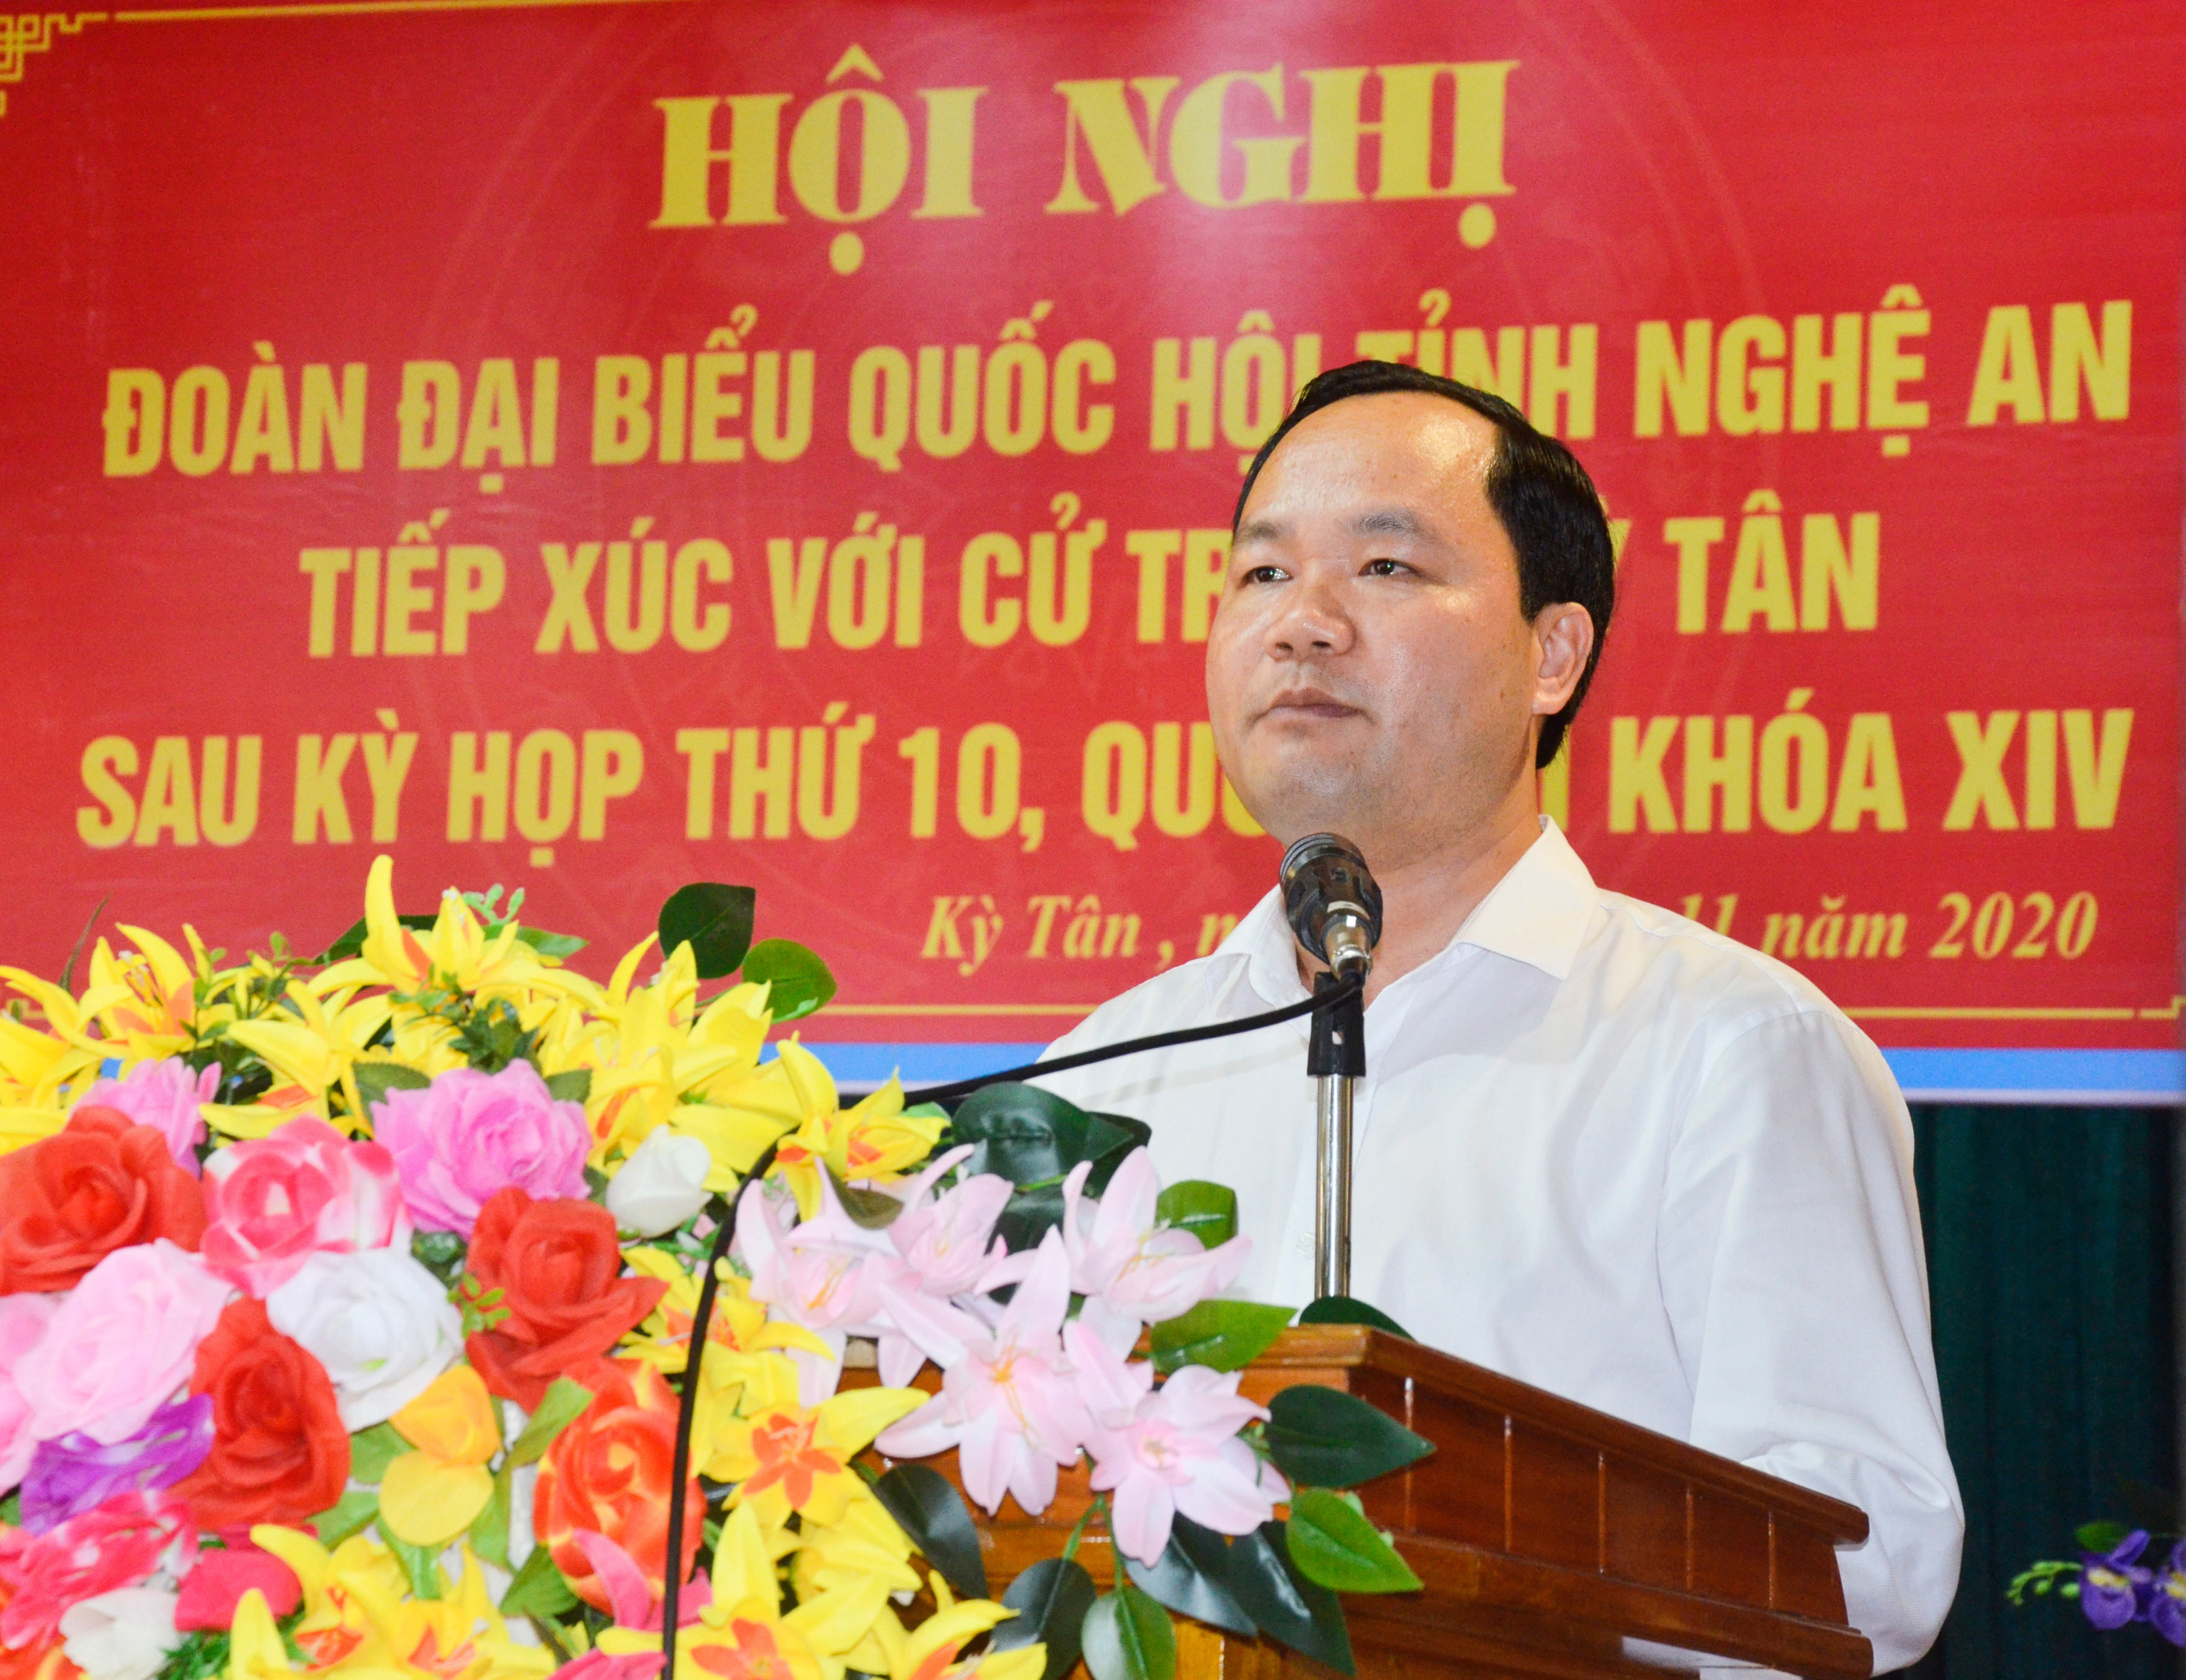 Chủ tịch UBND huyện Tân Kỳ trả lời làm rõ kiến nghị của cử tri. Ảnh: Thanh Lê